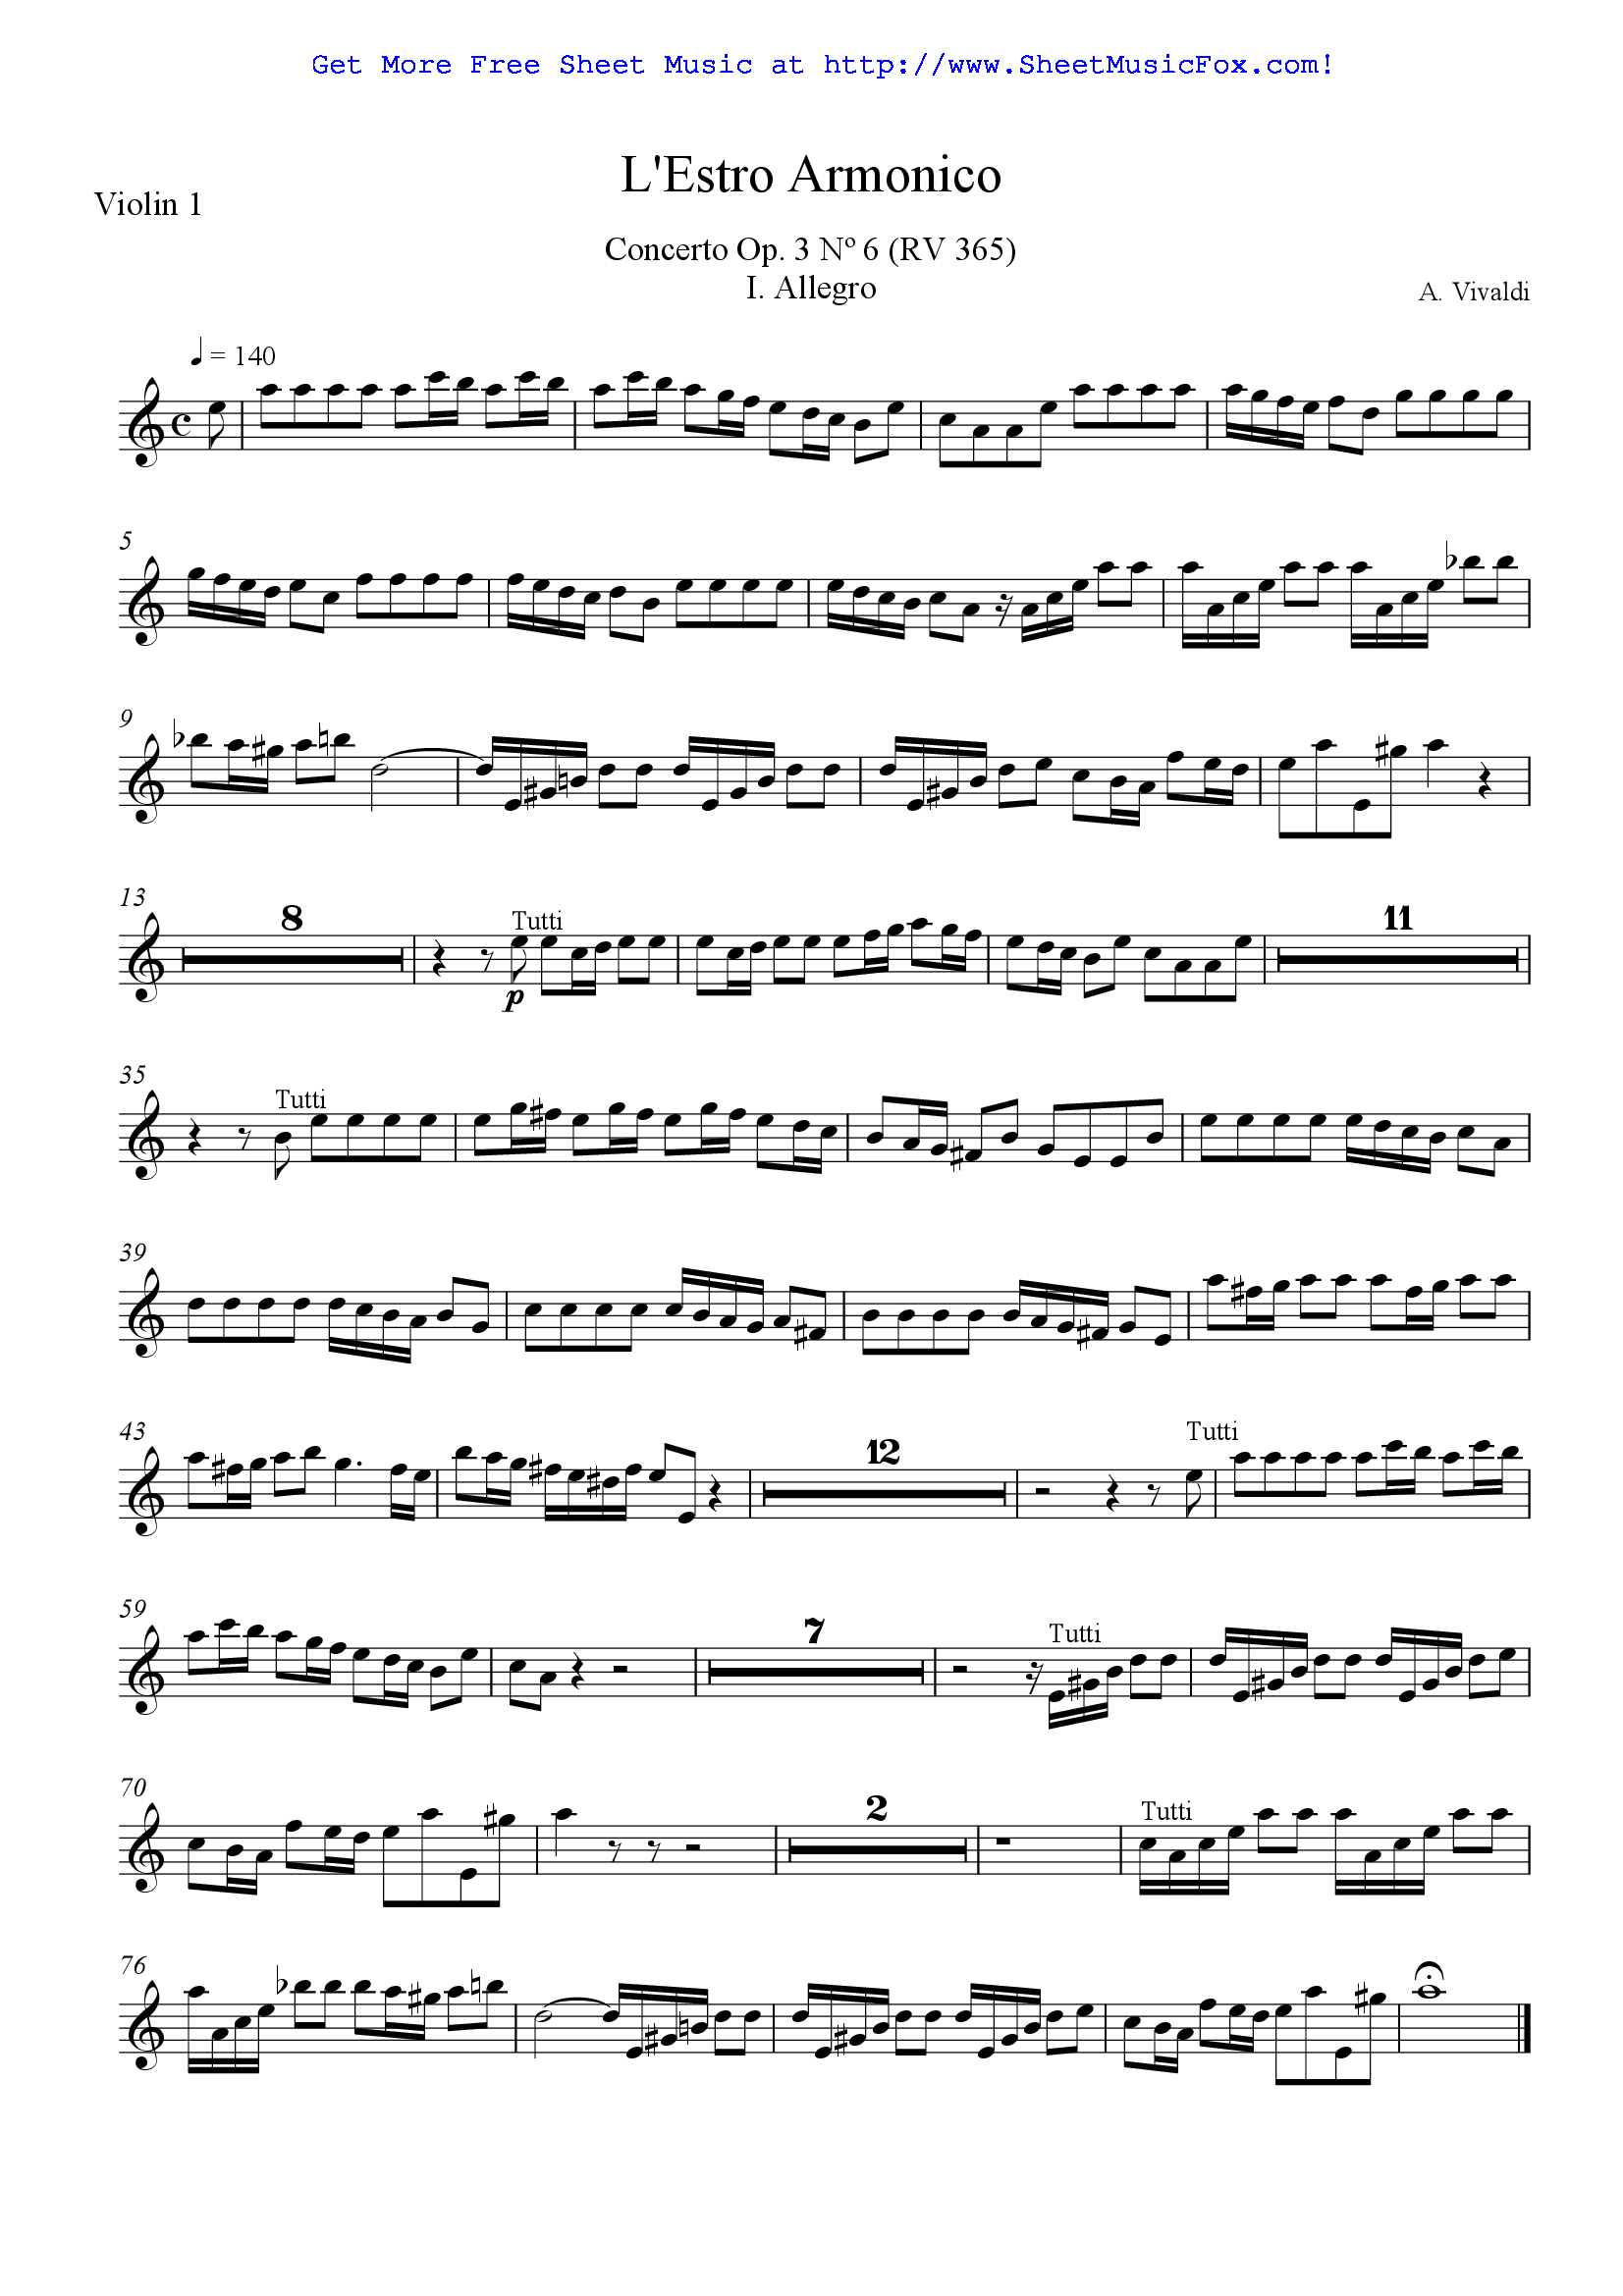 Violin Notes Вивальди. Mozart no.4 in d Major KV 218 Allegro. Violin Concerto in a Minor a. Vivaldi. Вивальди rv356. Vivaldi violin